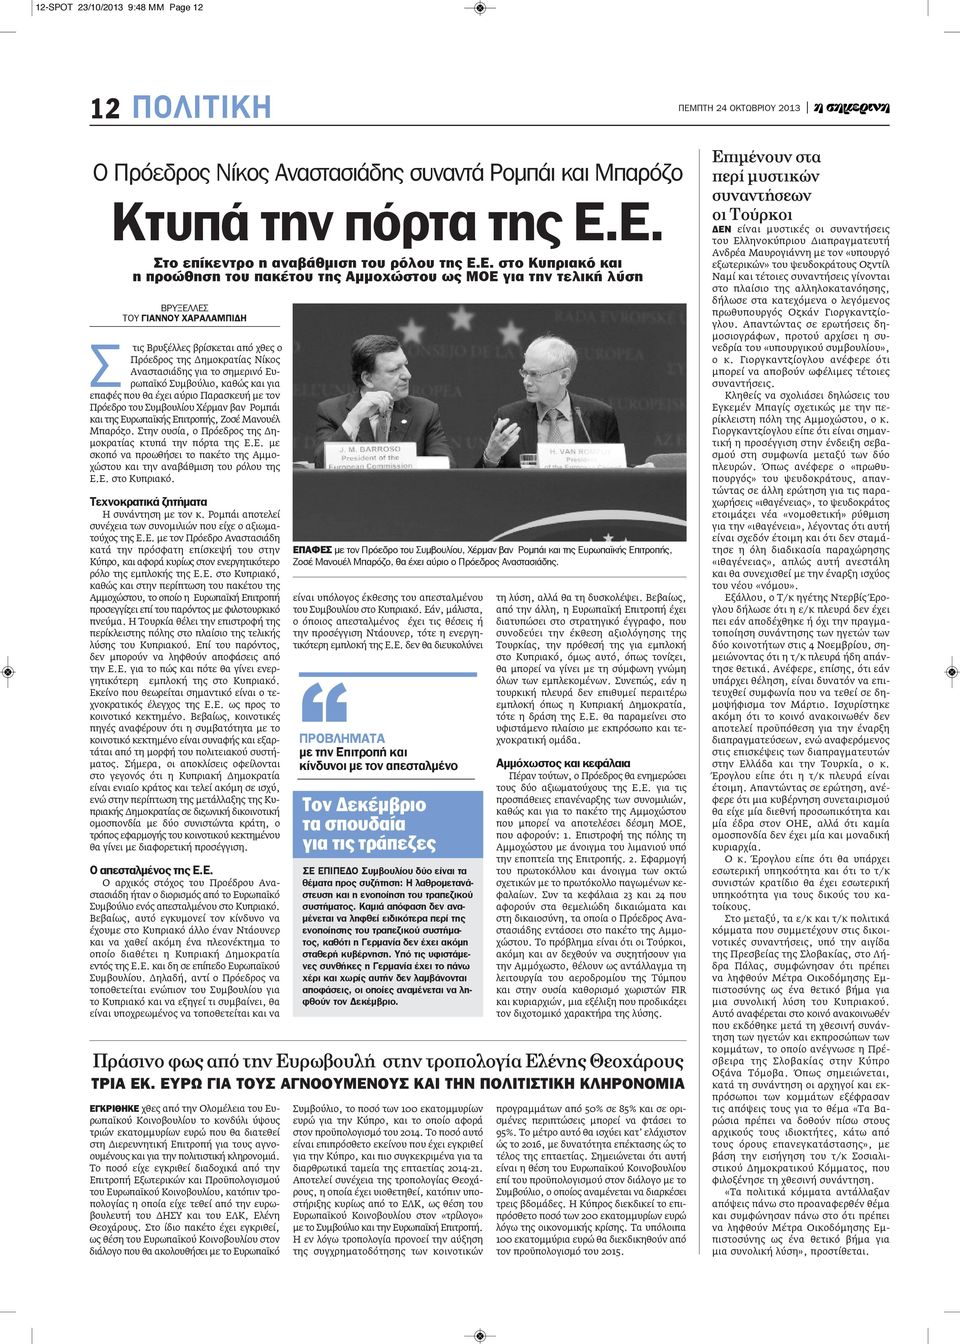 ο Πρόεδρος της Δημοκρατίας Νίκος Αναστασιάδης για το σημερινό Ευρωπαϊκό Συμβούλιο, καθώς και για επαφές που θα έχει αύριο Παρασκευή με τον Πρόεδρο του Συμβουλίου Χέρμαν βαν Ρομπάι και της Ευρωπαϊκής